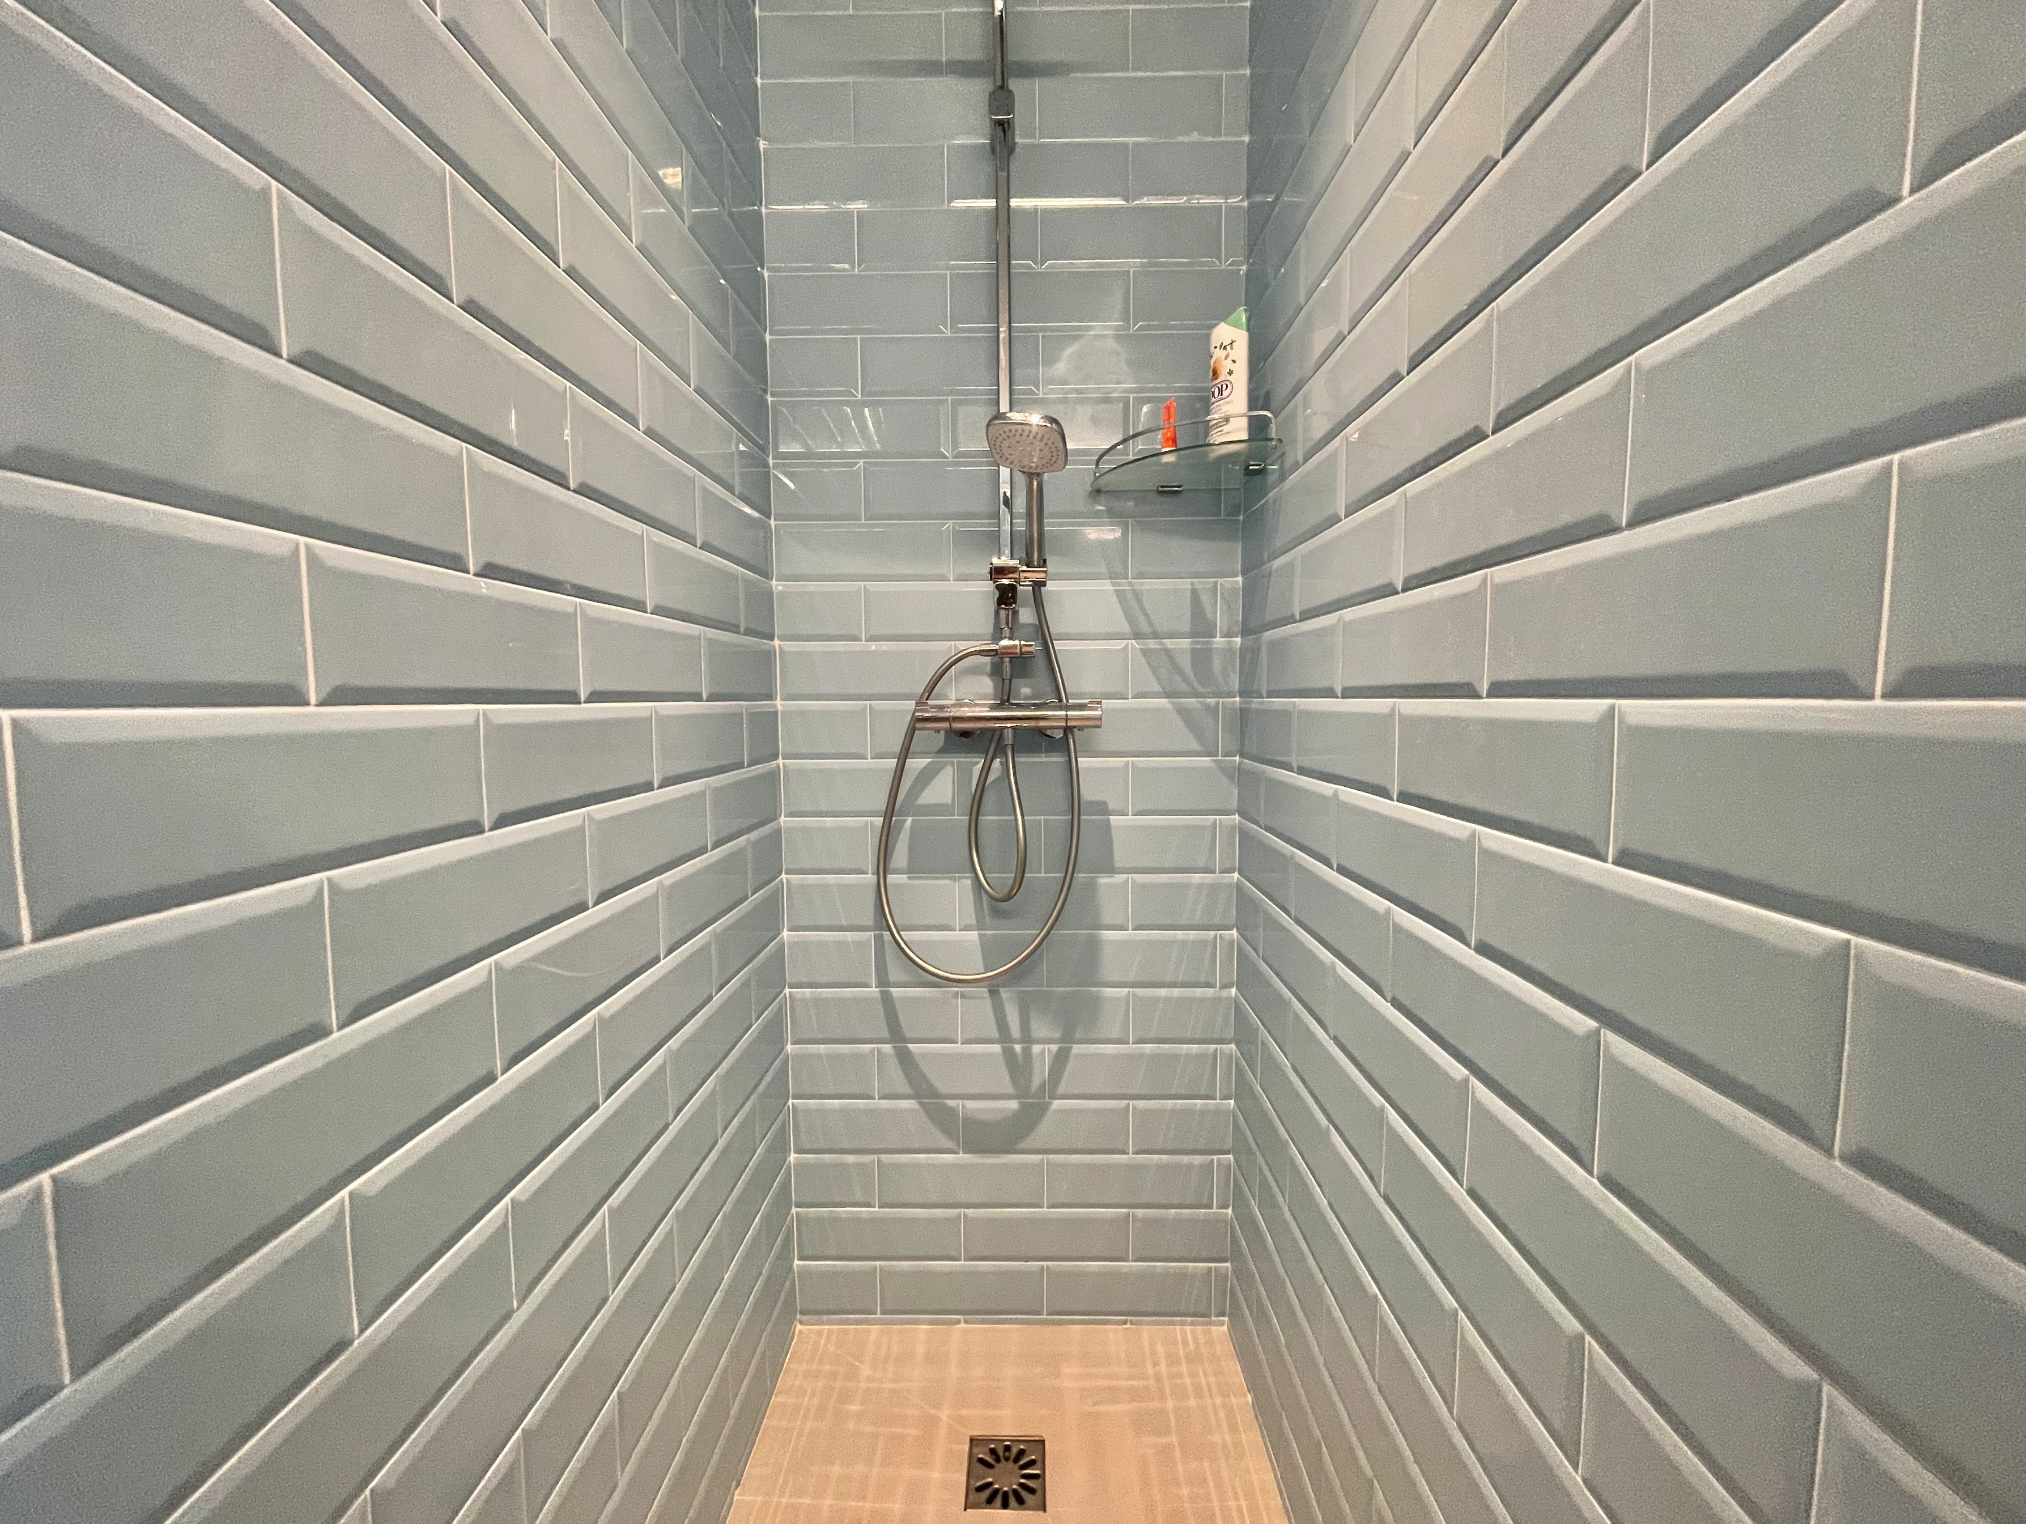 Rénovation d'une douche, détail du carrelage style métro dans une teinte bleu ciel